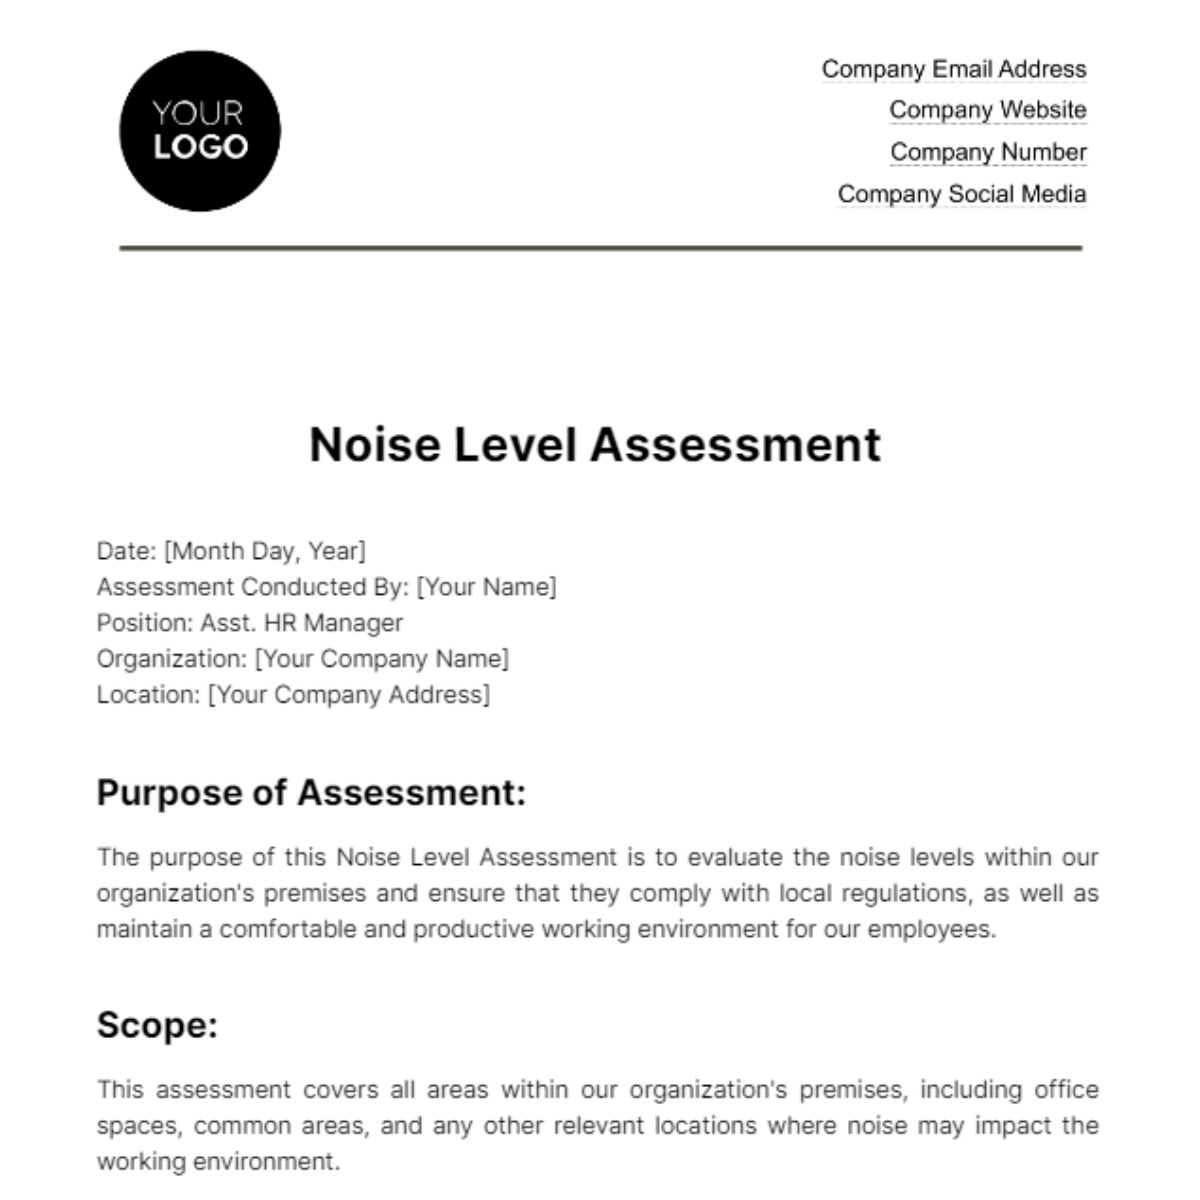 Noise Level Assessment HR Template